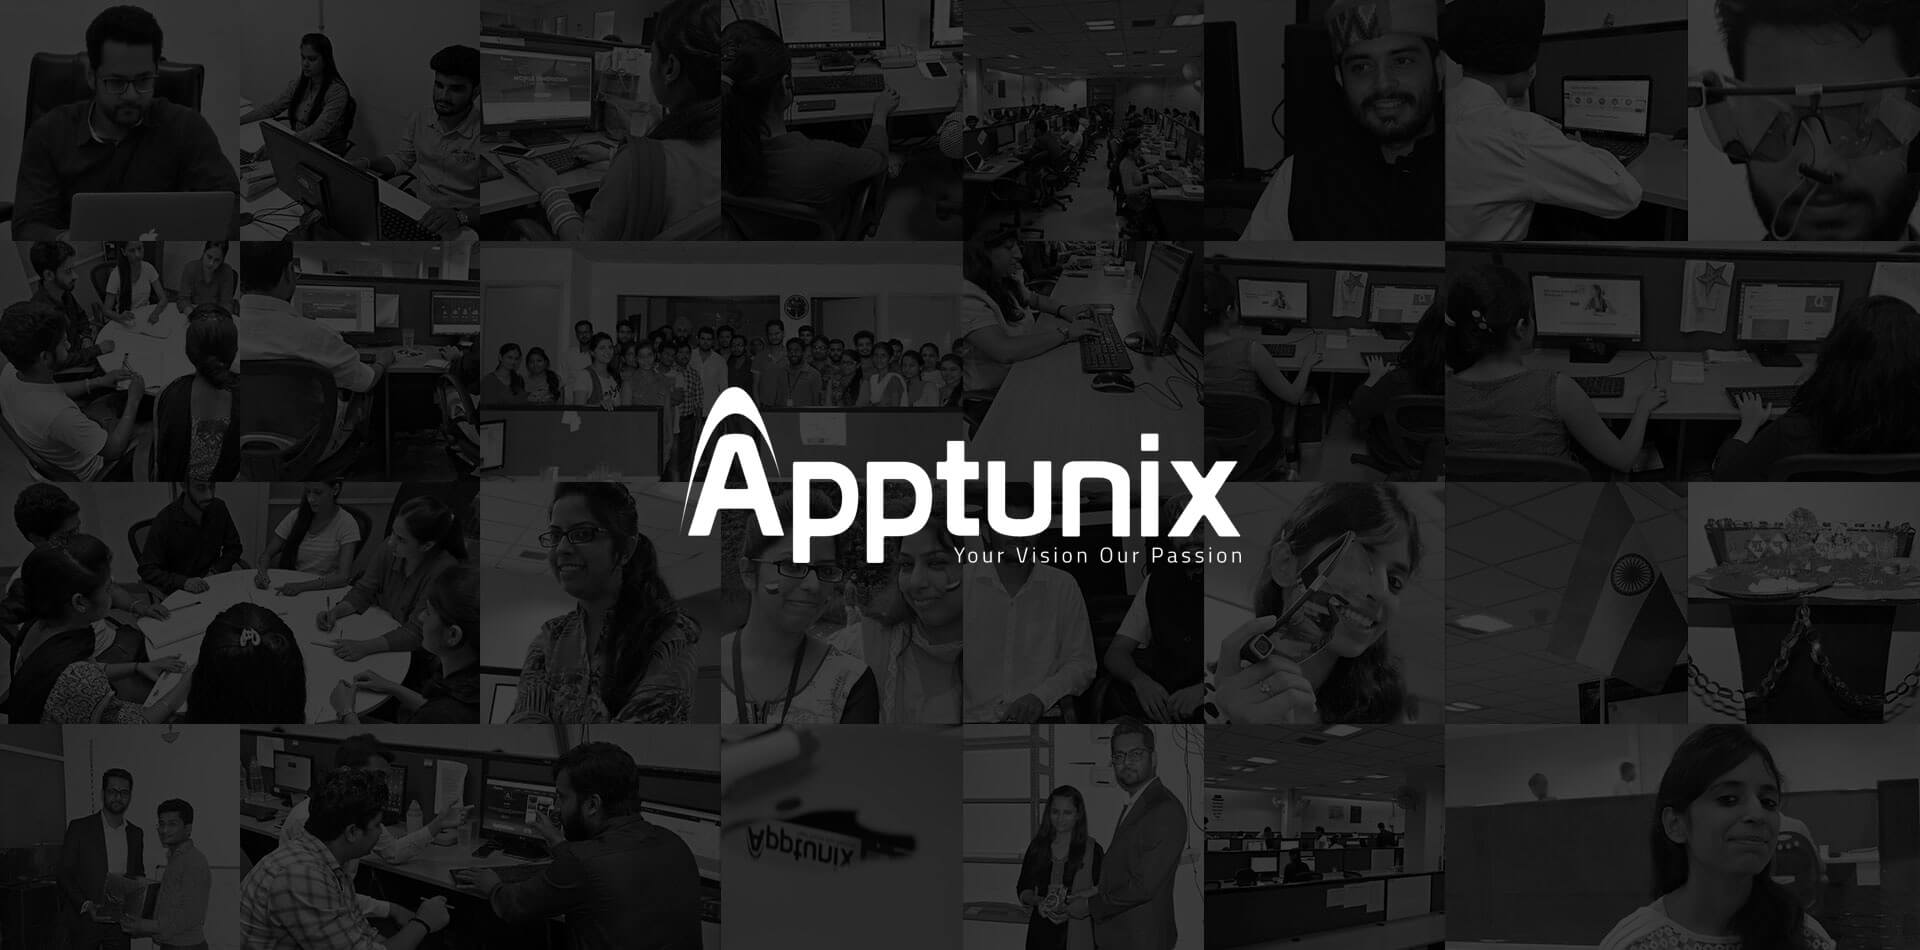 Mobile App Development Dubai - Apptunix